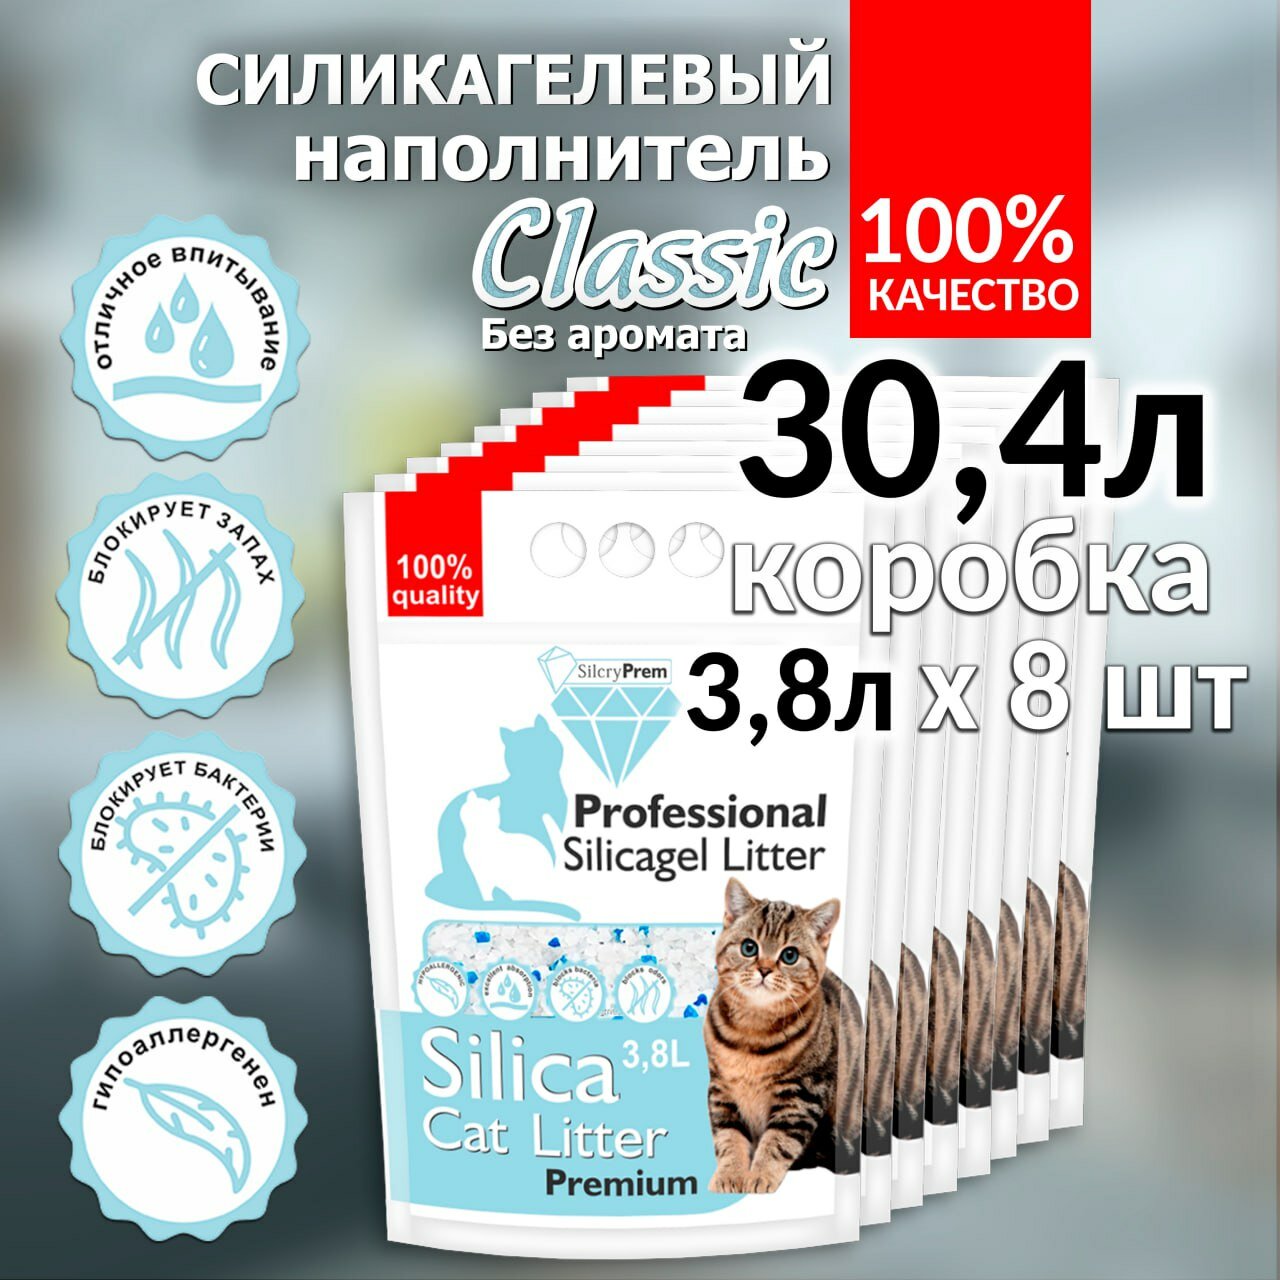 Наполнитель для кошачьего туалета Силикагелевый без отдушки SilcryPrem Classic Blue 30,4л (8 пачек по 3,8л) - Классик